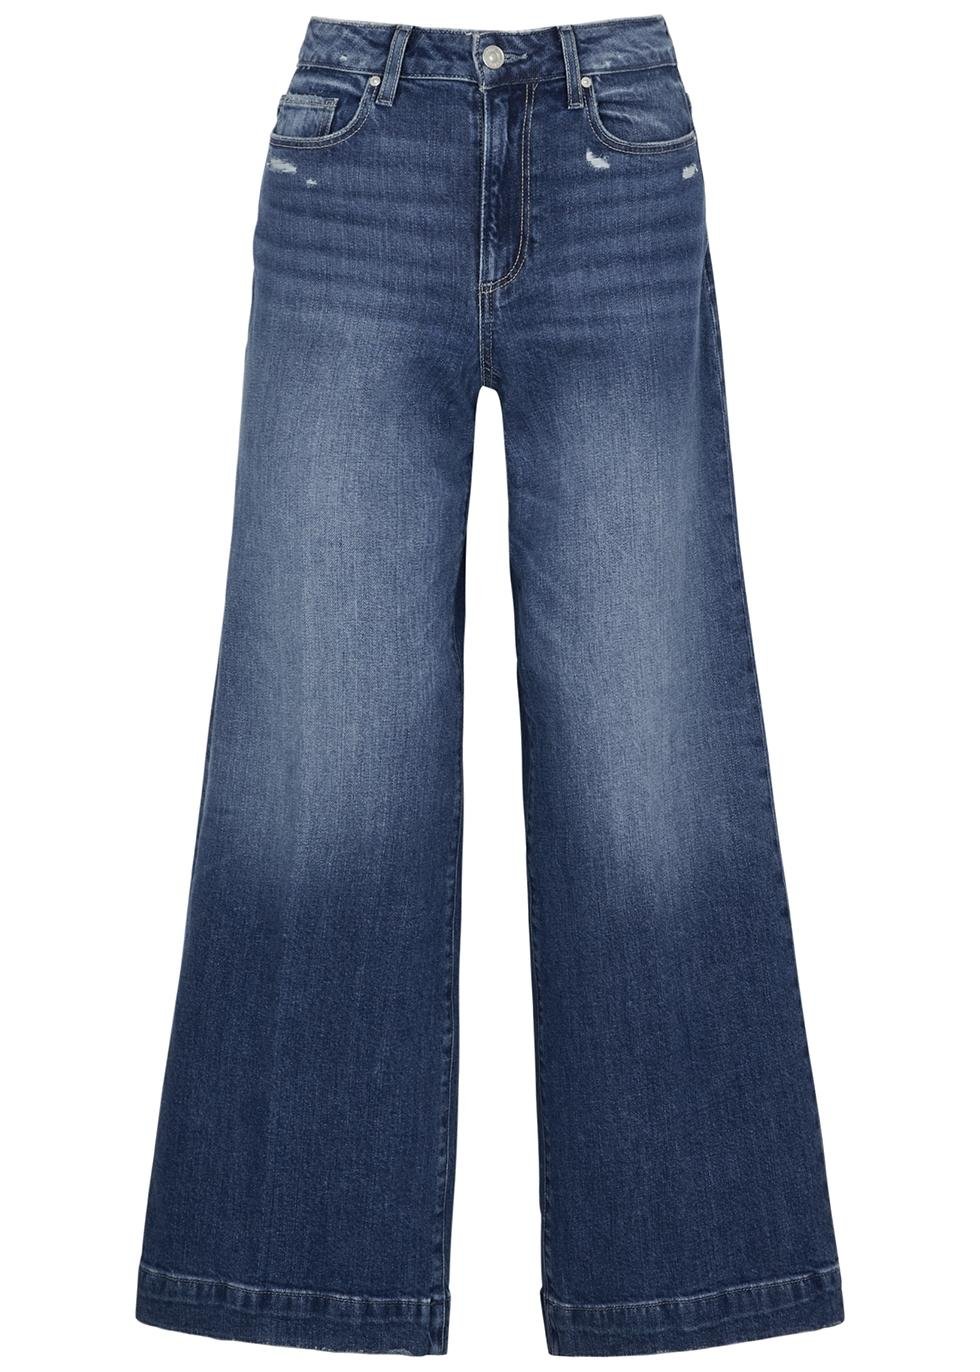 Harper wide-leg jeans by PAIGE